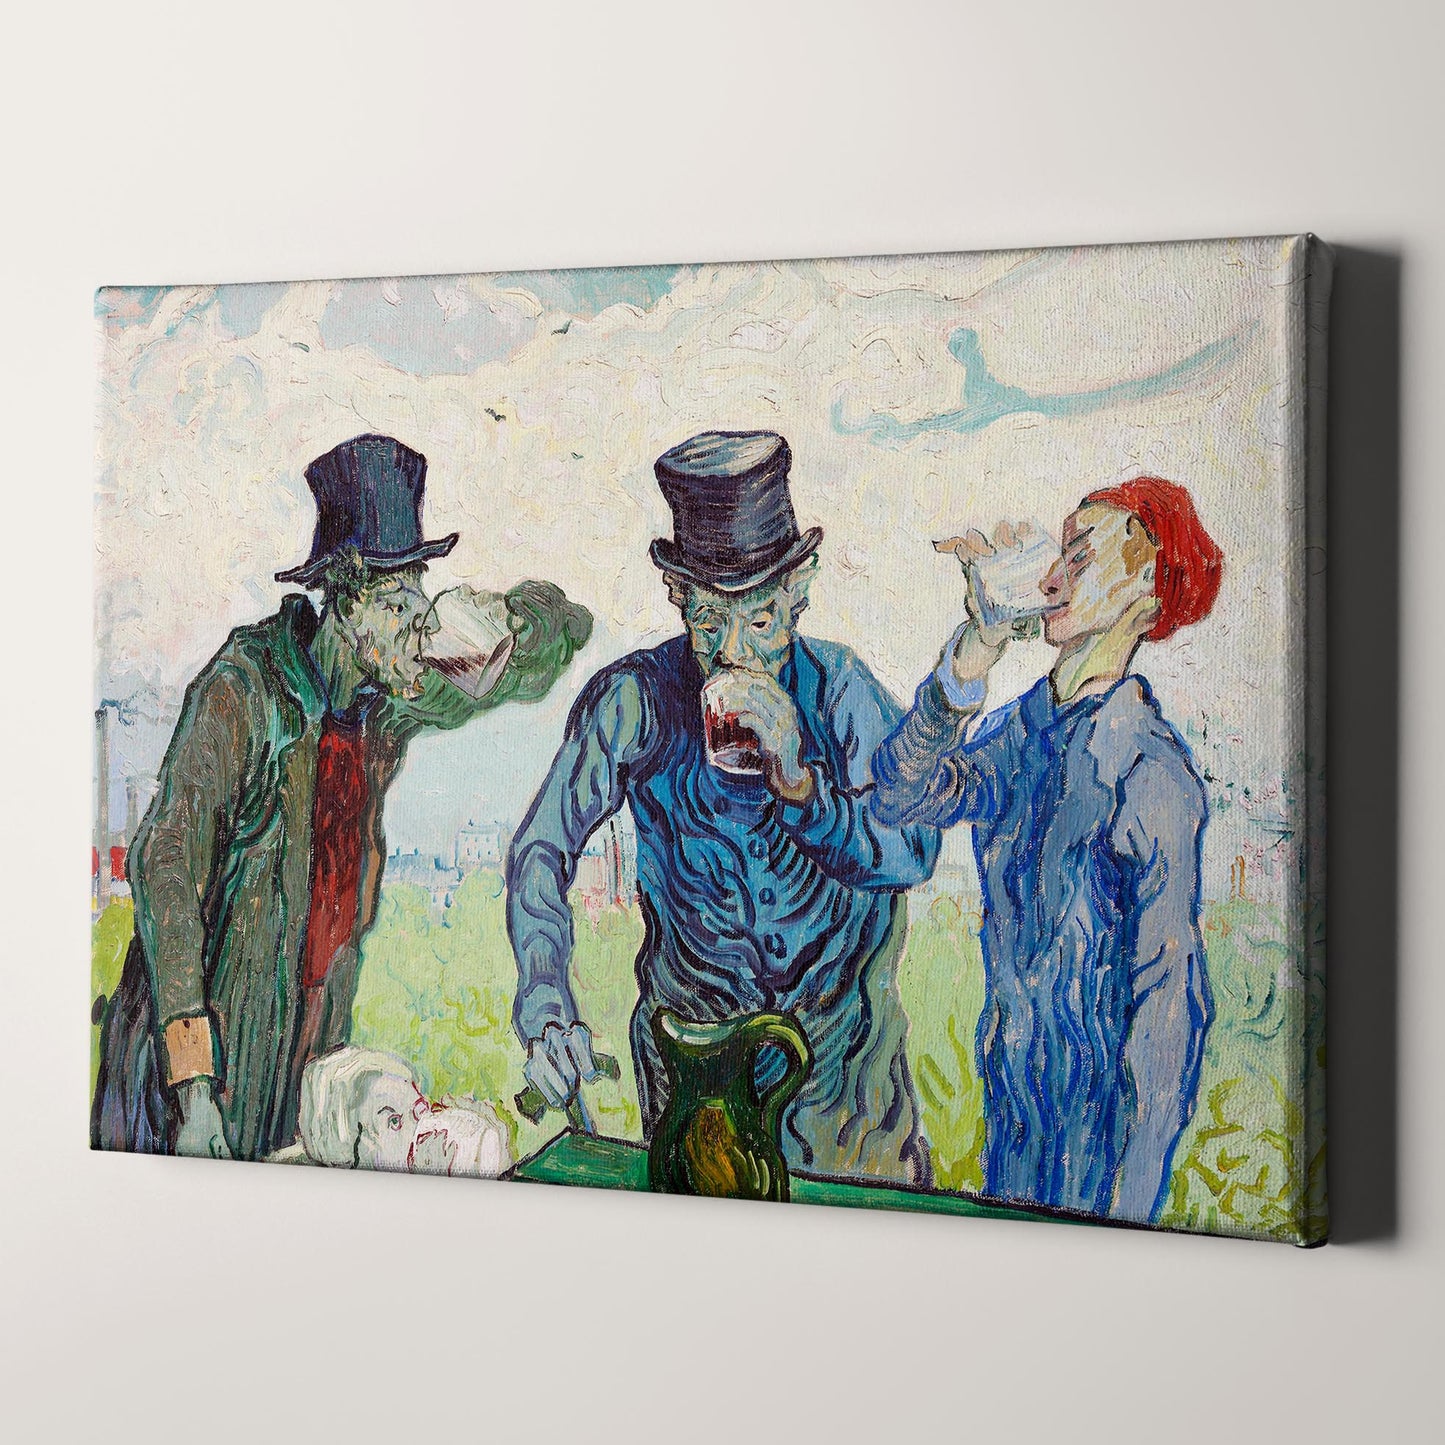 The Drinkers (1890) by Van Gogh